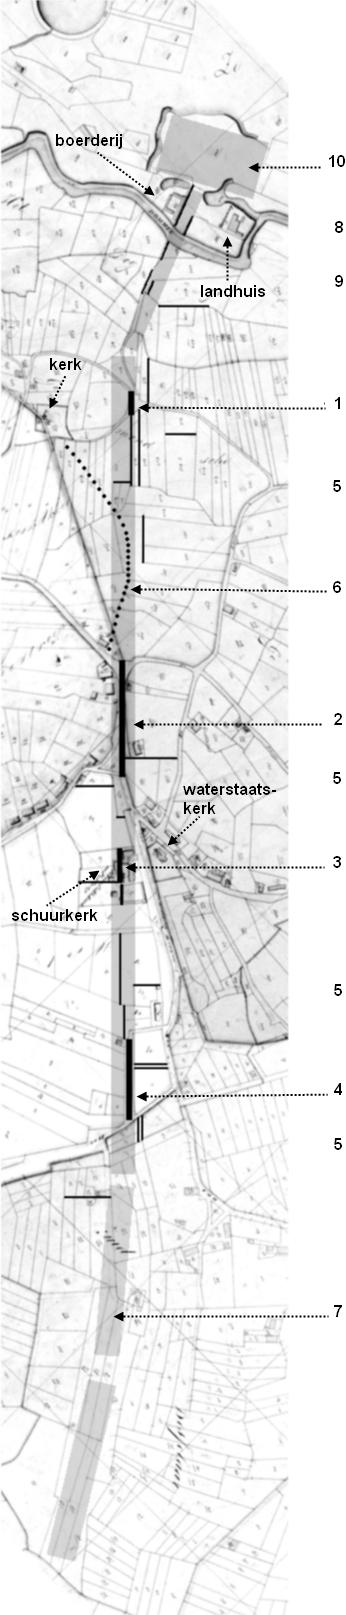 3 Wanneer deze lijn op een kaart met een veel grotere schaal wordt gezet, blijkt dat de flauwe bocht in de richting Olland en Sint-Oedenrode wijst. De andere kant wijst naar de Dommel.